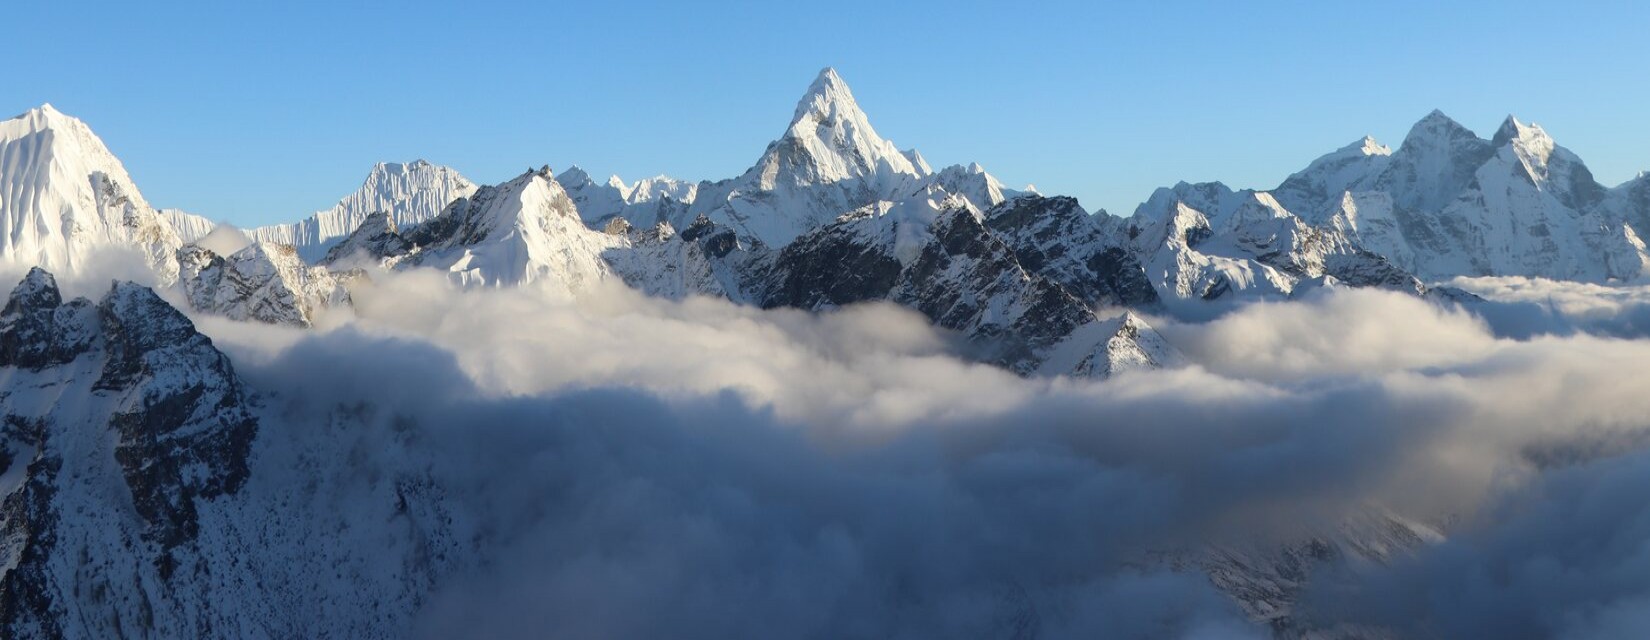 Everest-himalayan-yoga-trek